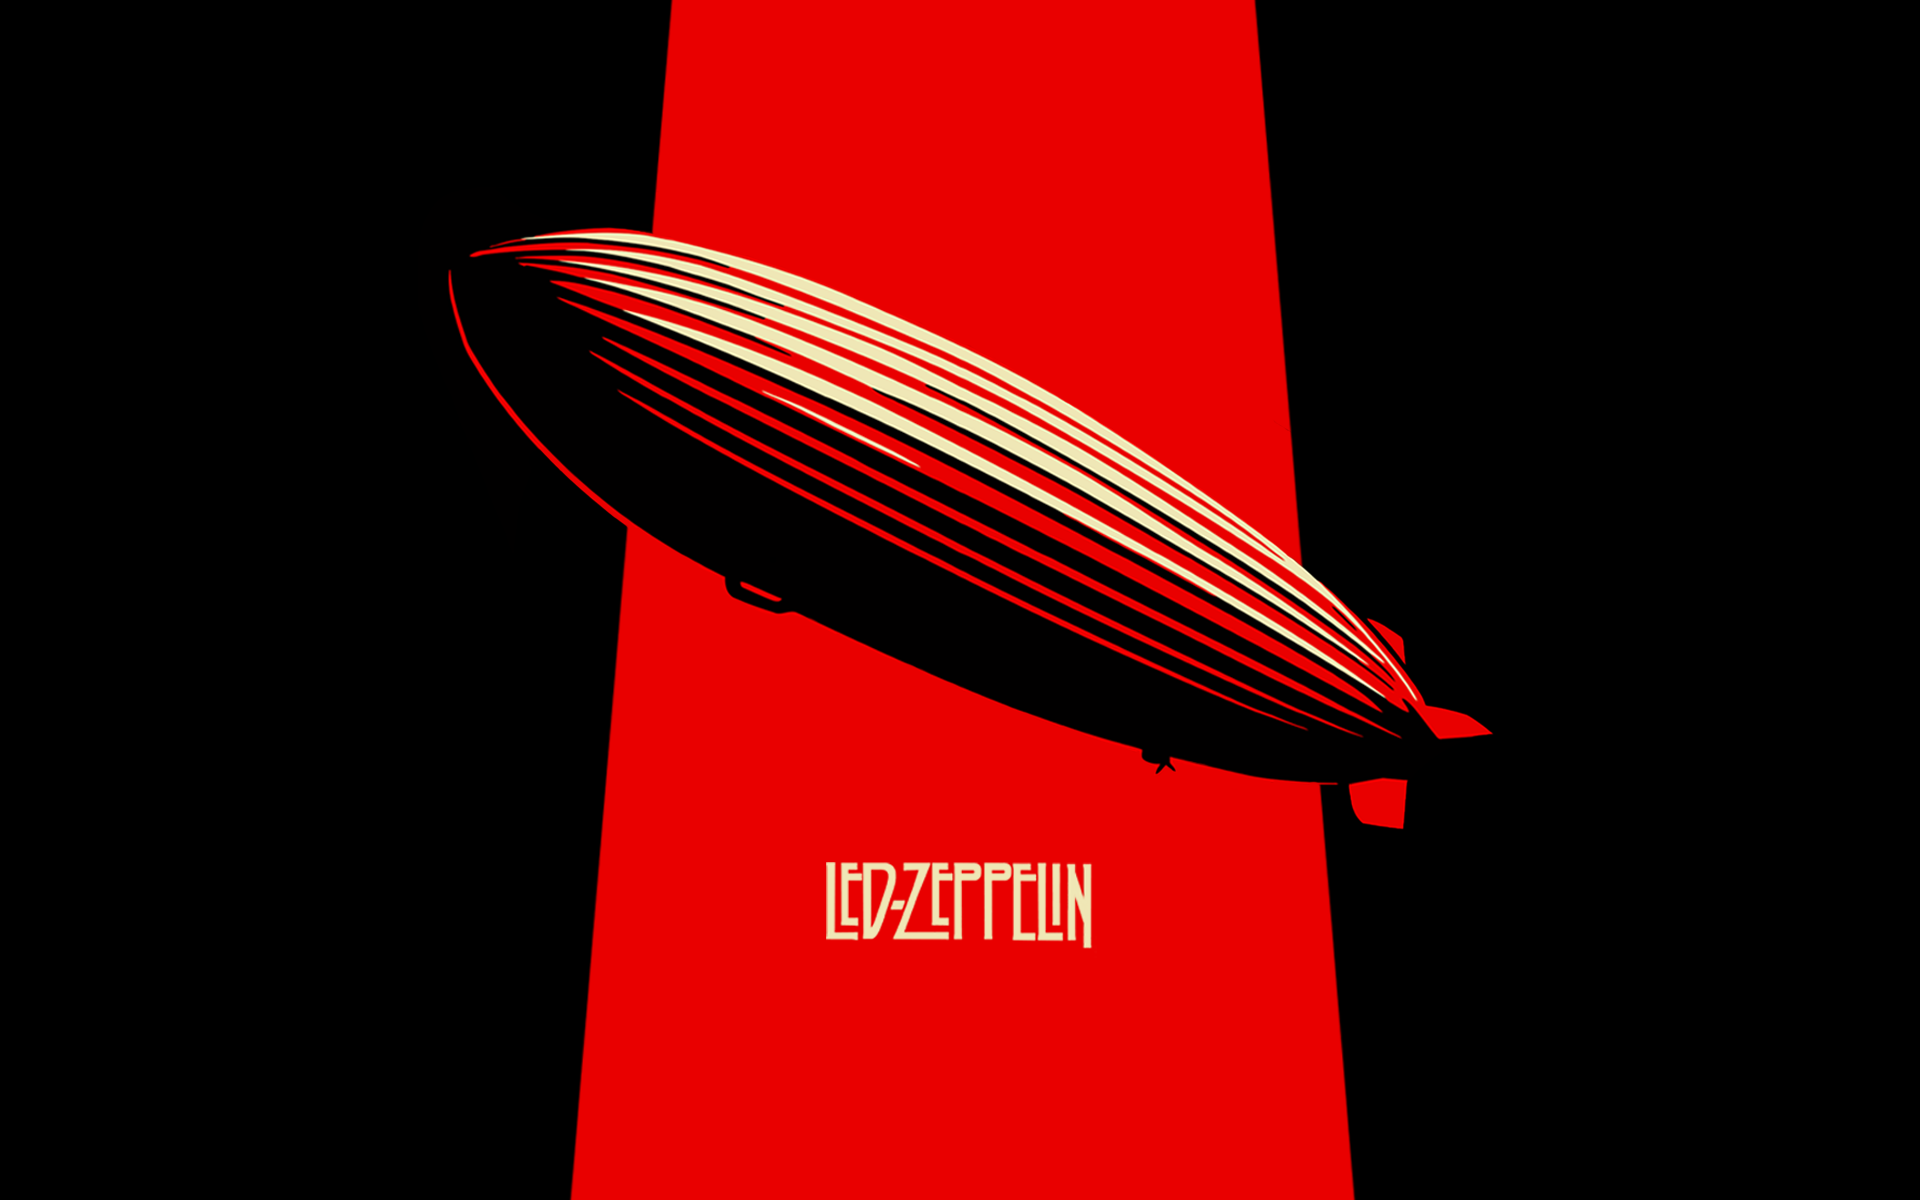 led zeppelin wallpaper,red,font,skateboard,logo,longboard